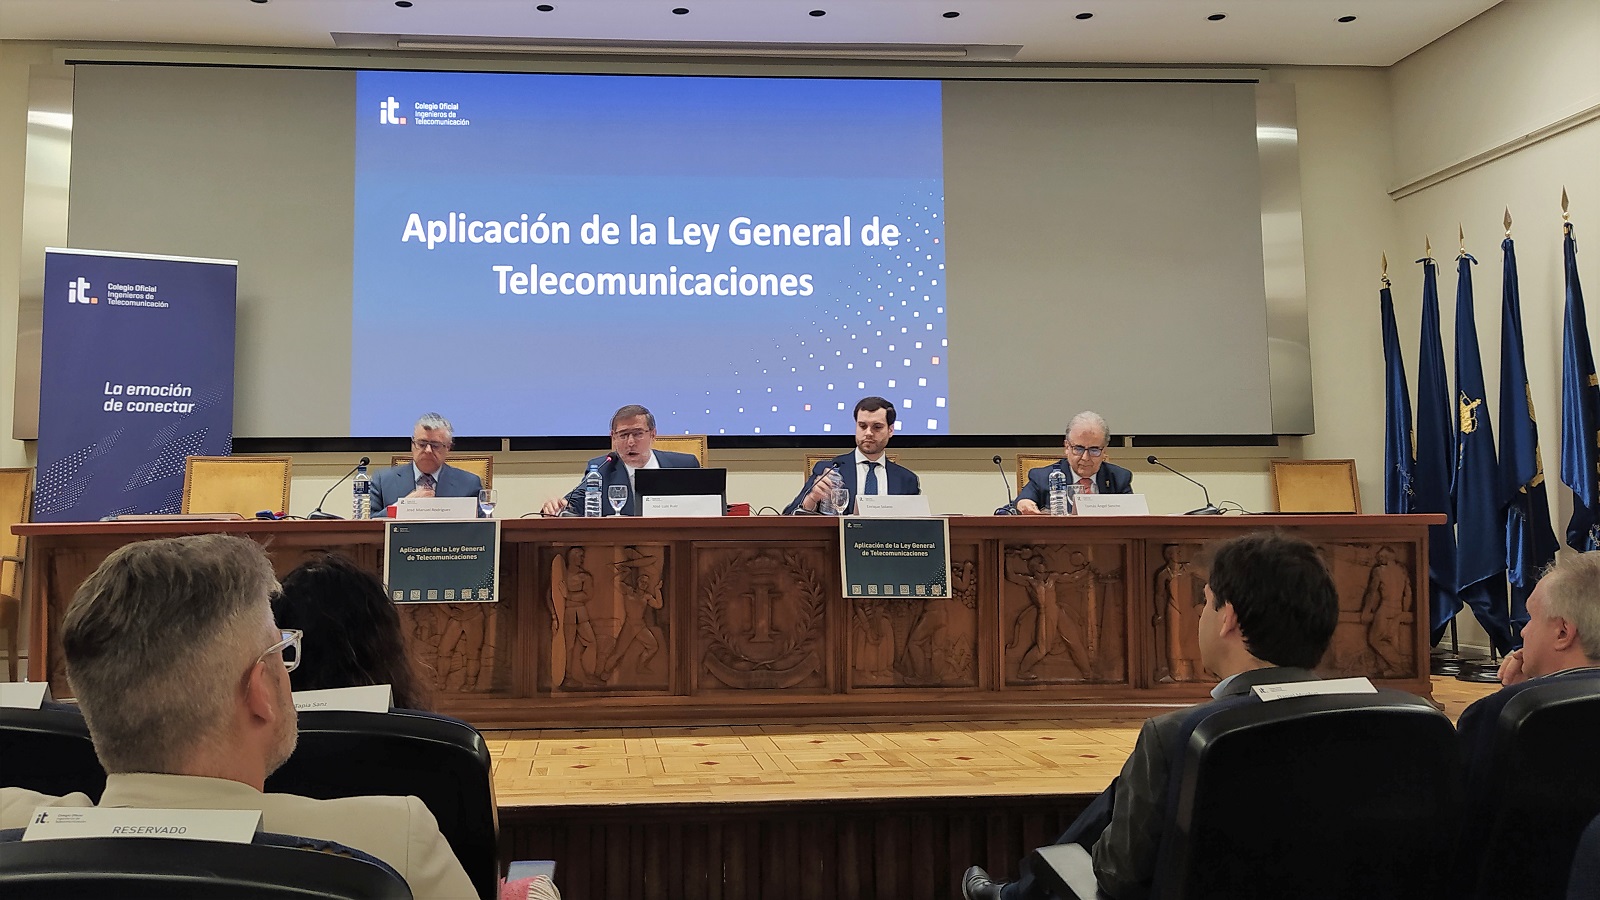 Presentación de la Ley Genral de Telecomunicaciones en el COIT